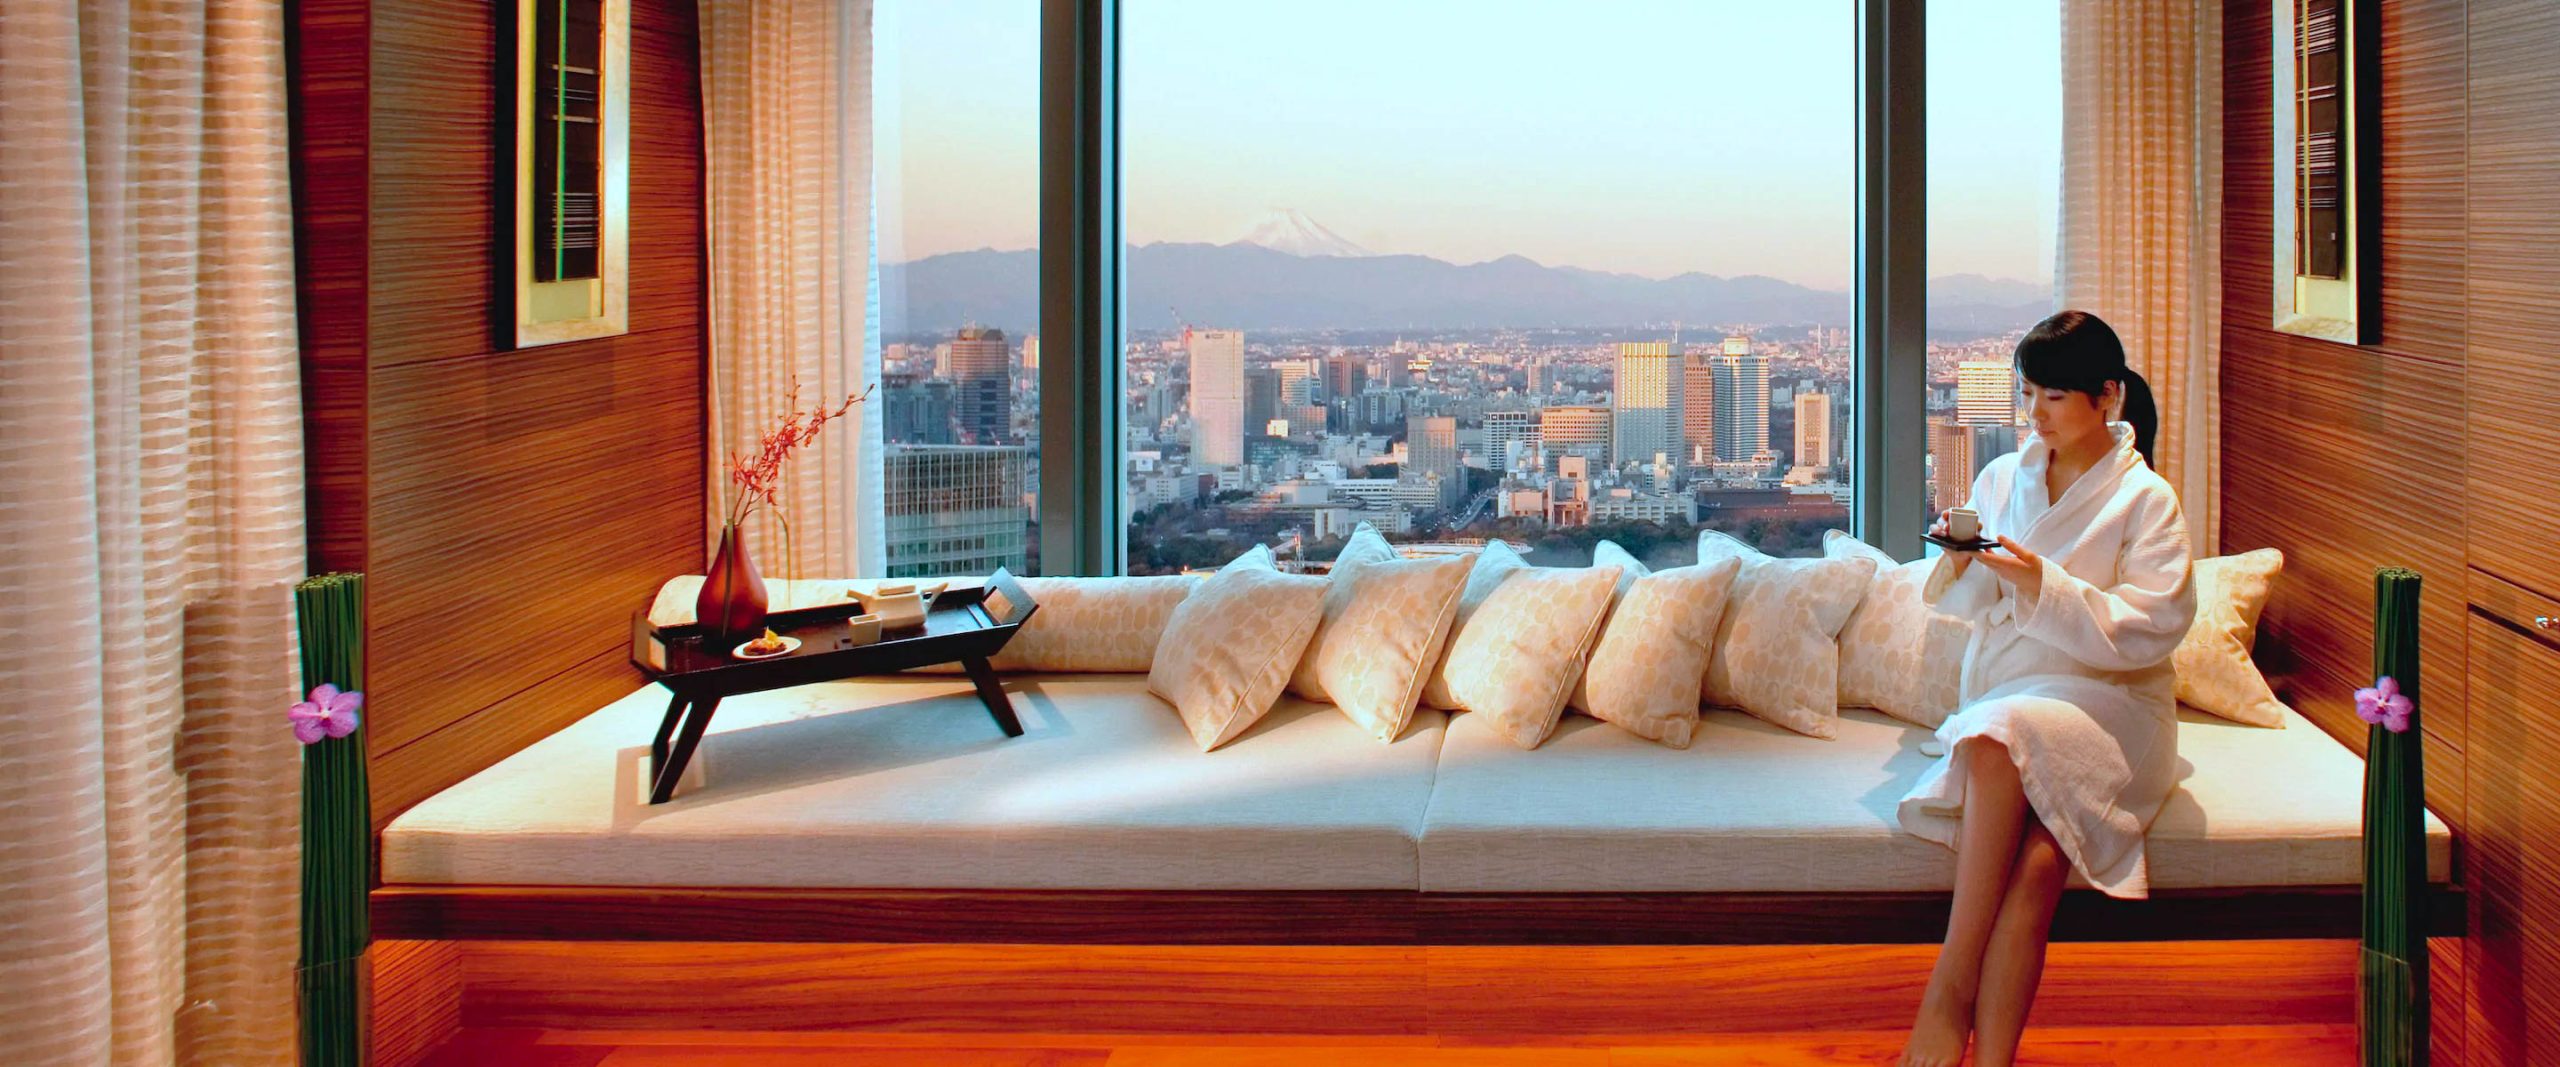 Mandarin Oriental, Tokyo Hotel – Tokyo, Japan – Spa Serenity Suite